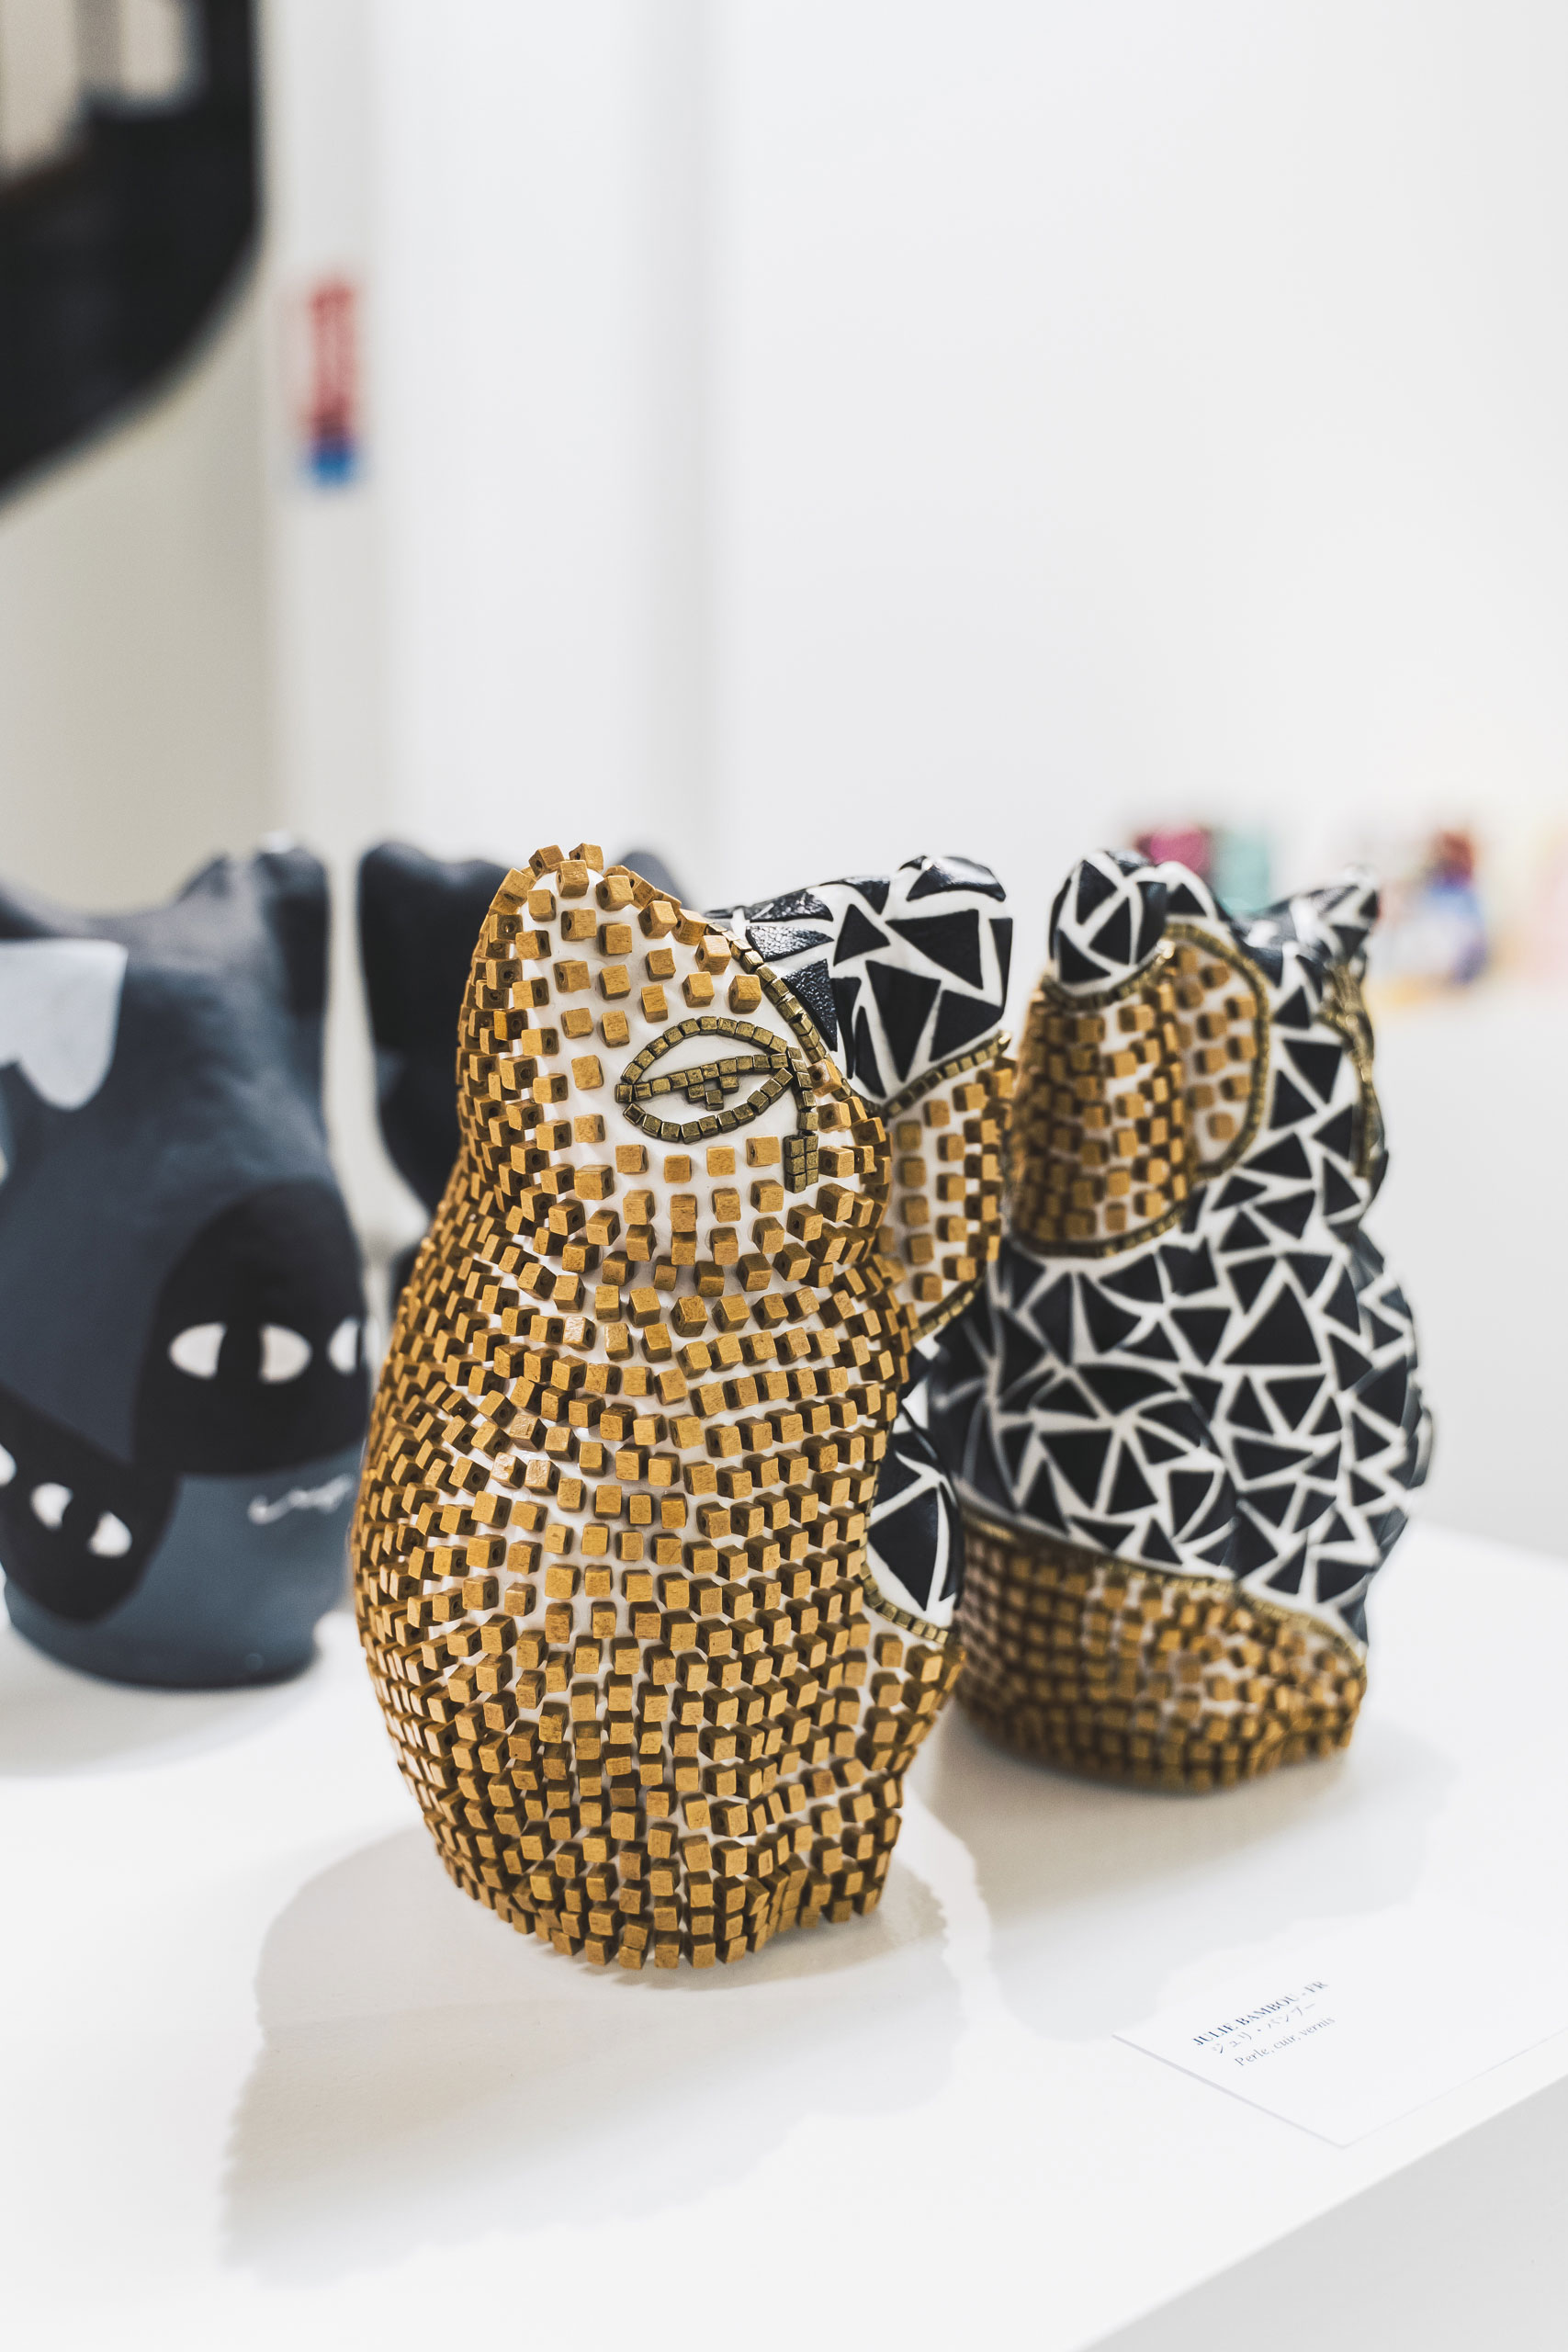 sato-creative-japon-lucky-cat-art-exhibition-50-artists-français-japonais-galerie-sid-lee